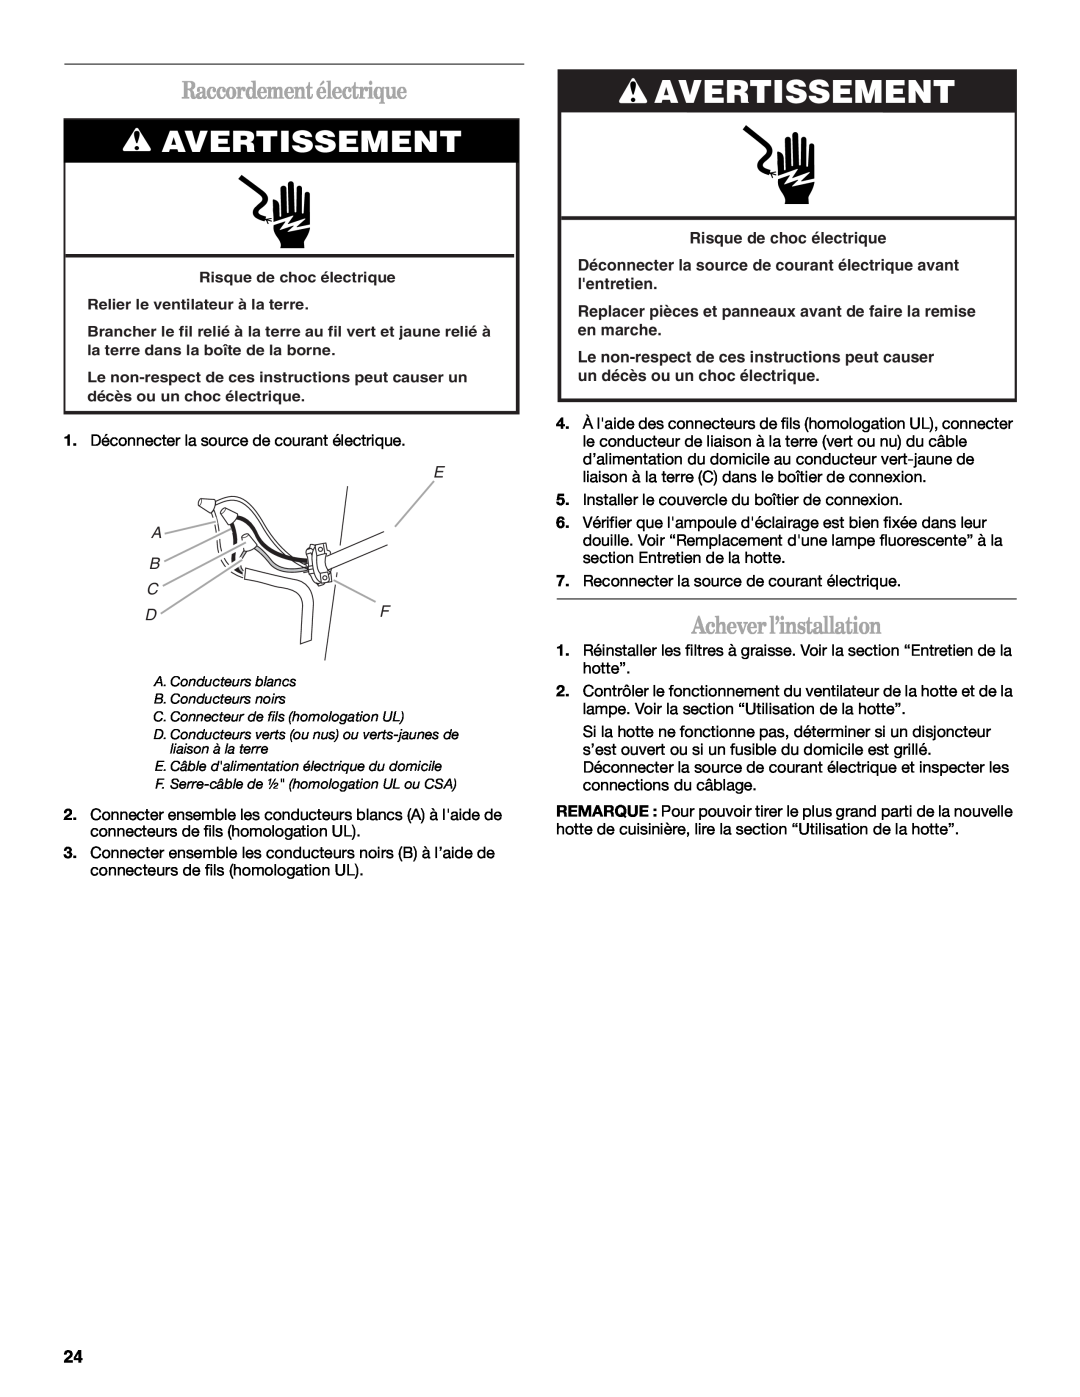 Whirlpool GXU7130DXS installation instructions Avertissement, Raccordementélectrique, Acheverl’installation, E A B C Df 